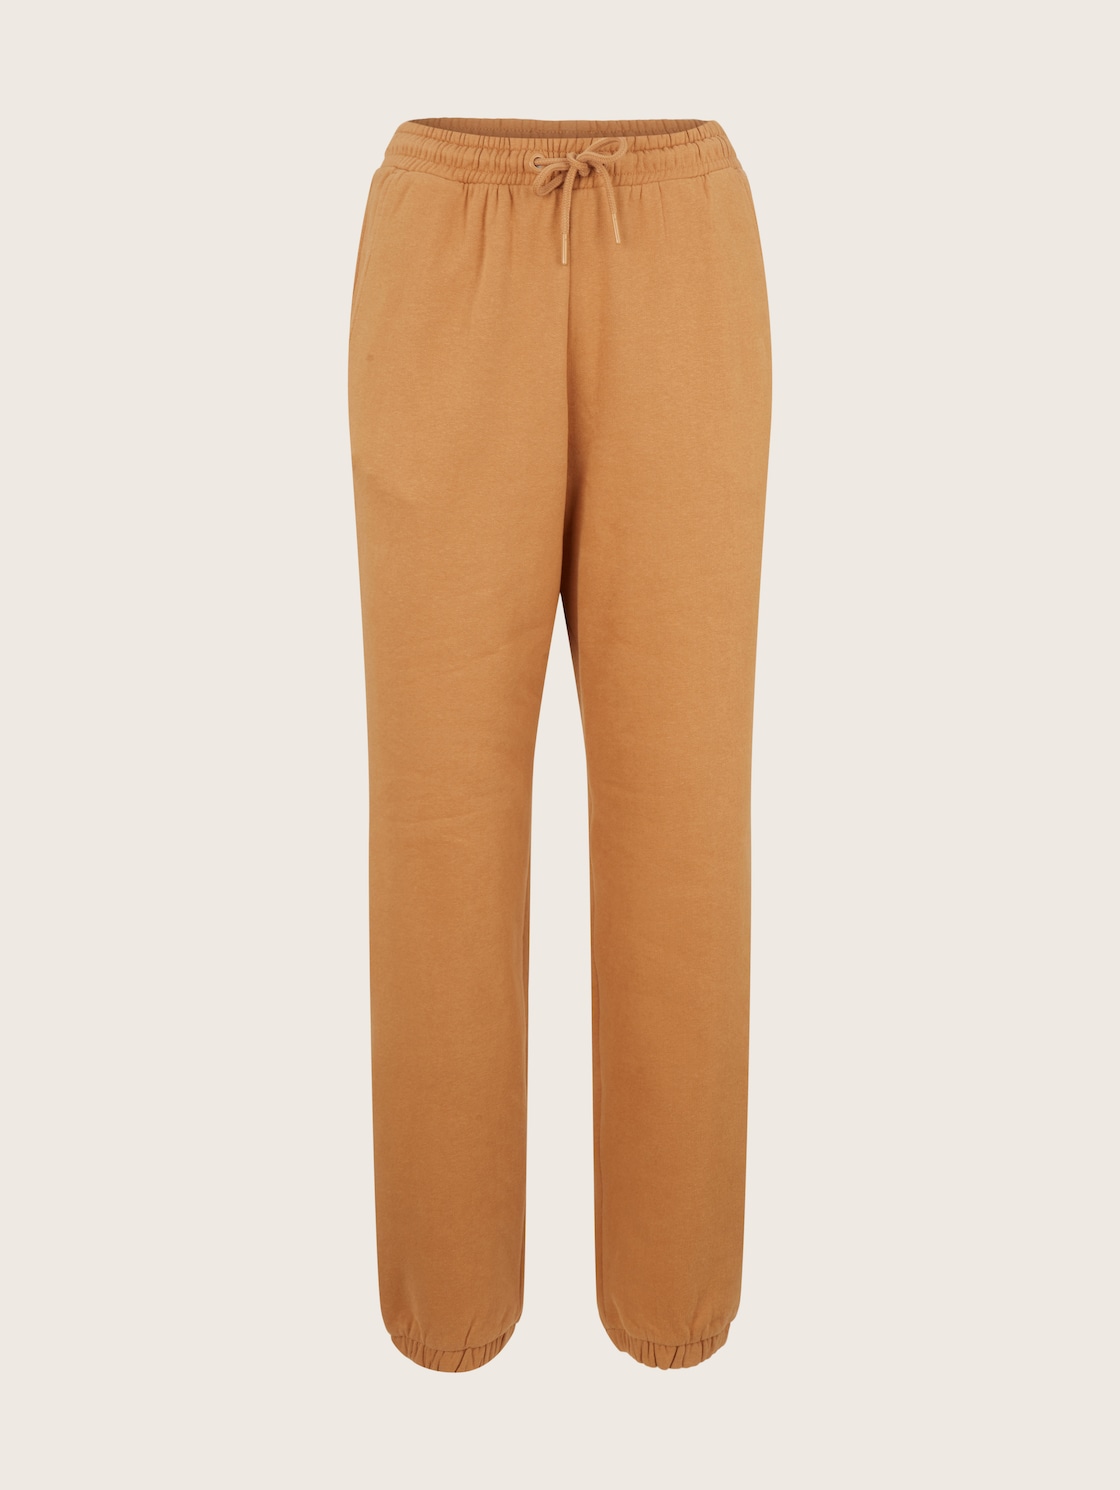 Спортивные брюки женские Tom Tailor Denim 1034512 коричневые M